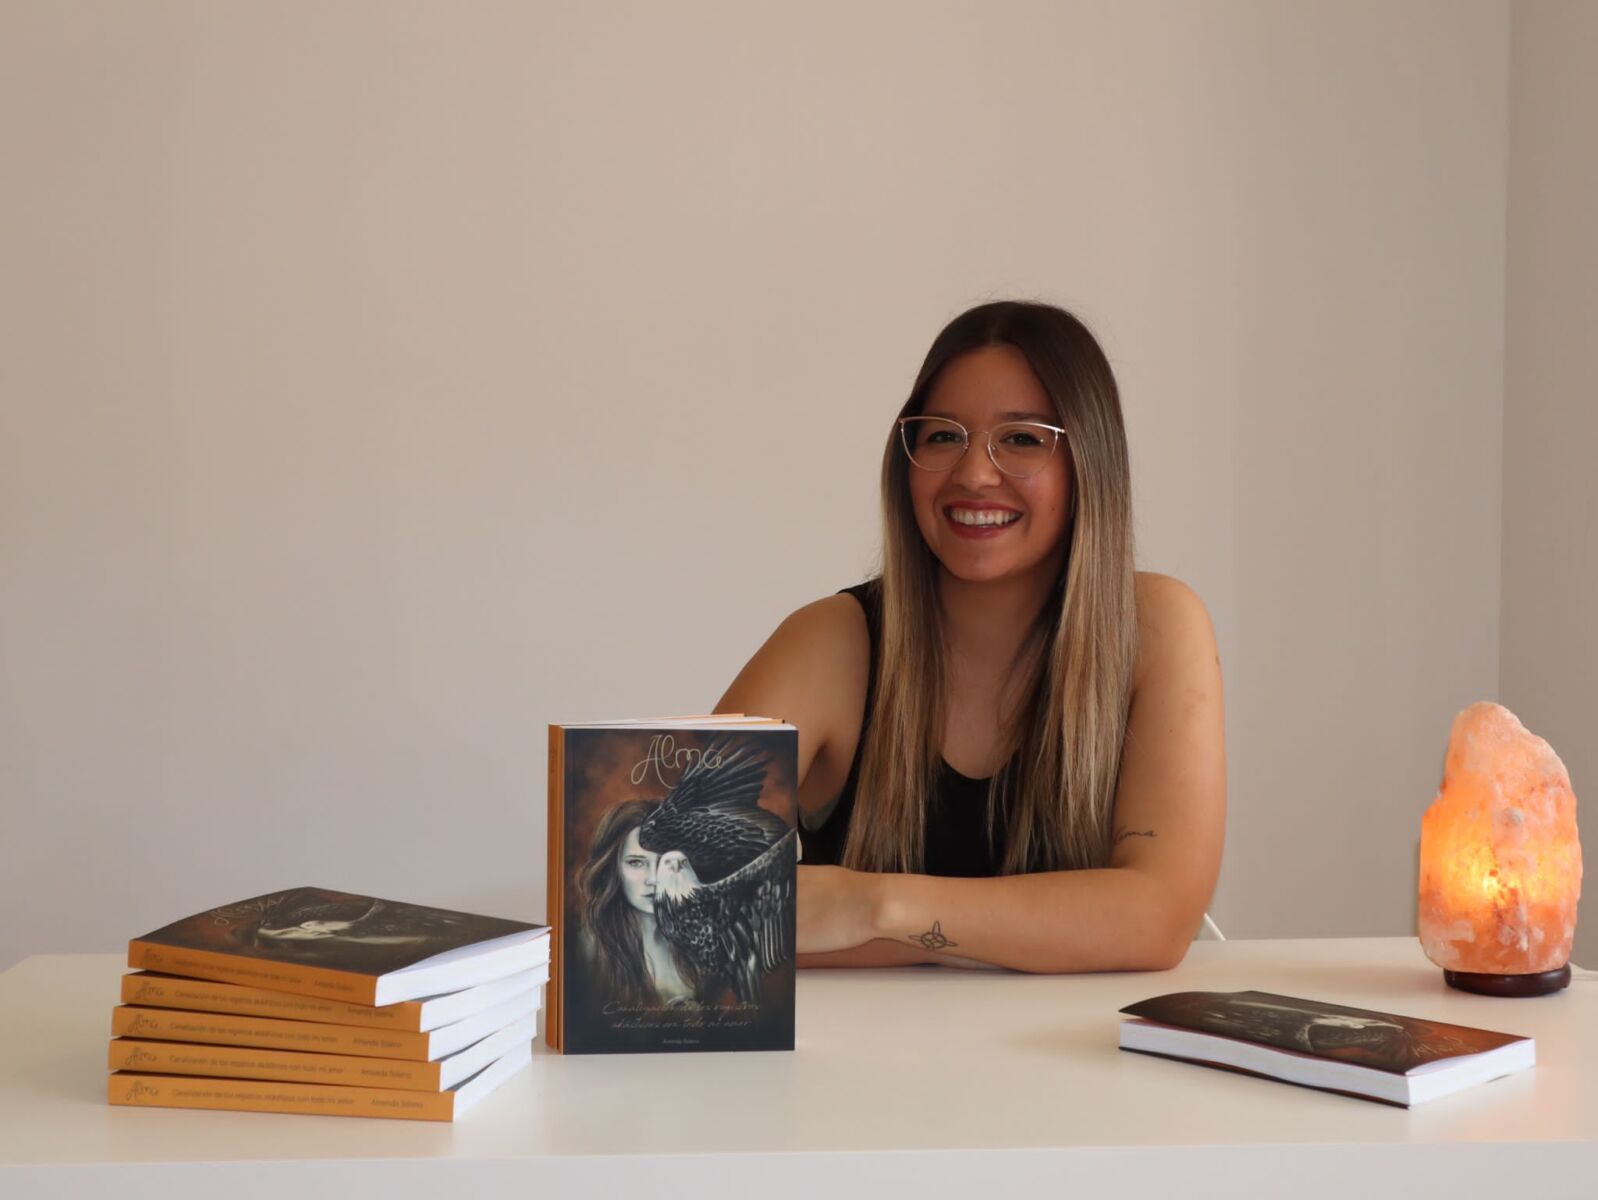 Amanda Solano invita a sus lectores a vivir el ahora a través de su libro: ‘Alma’.